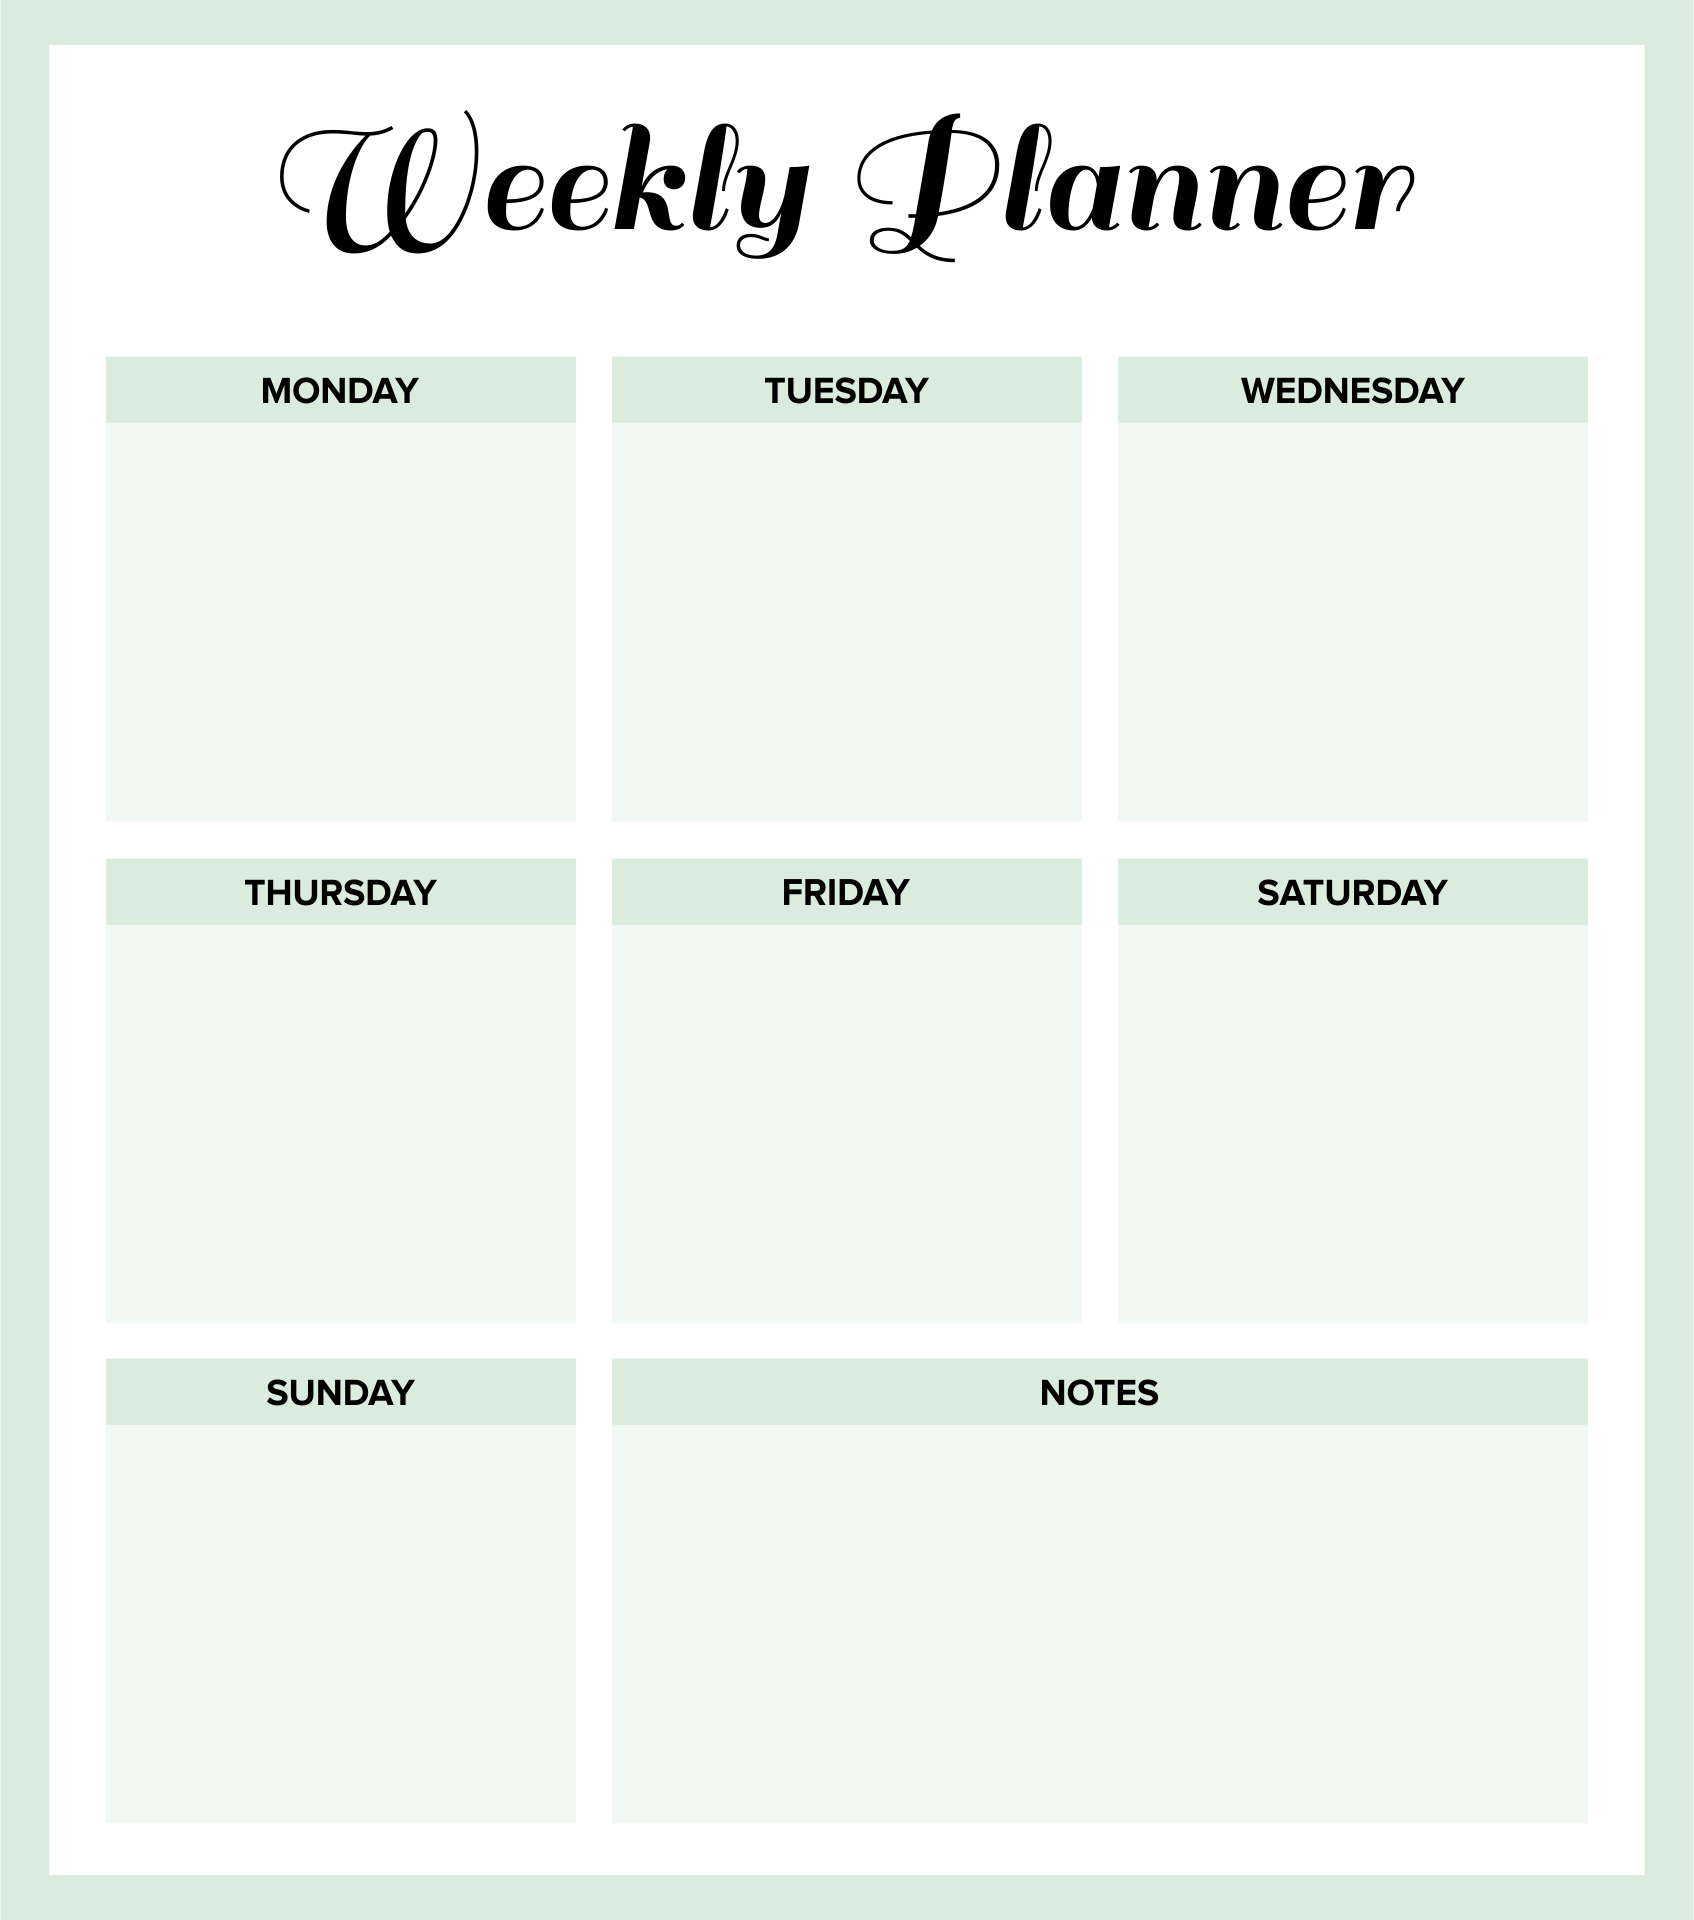 9-best-images-of-weekly-planner-printable-pdf-weekly-planner-template